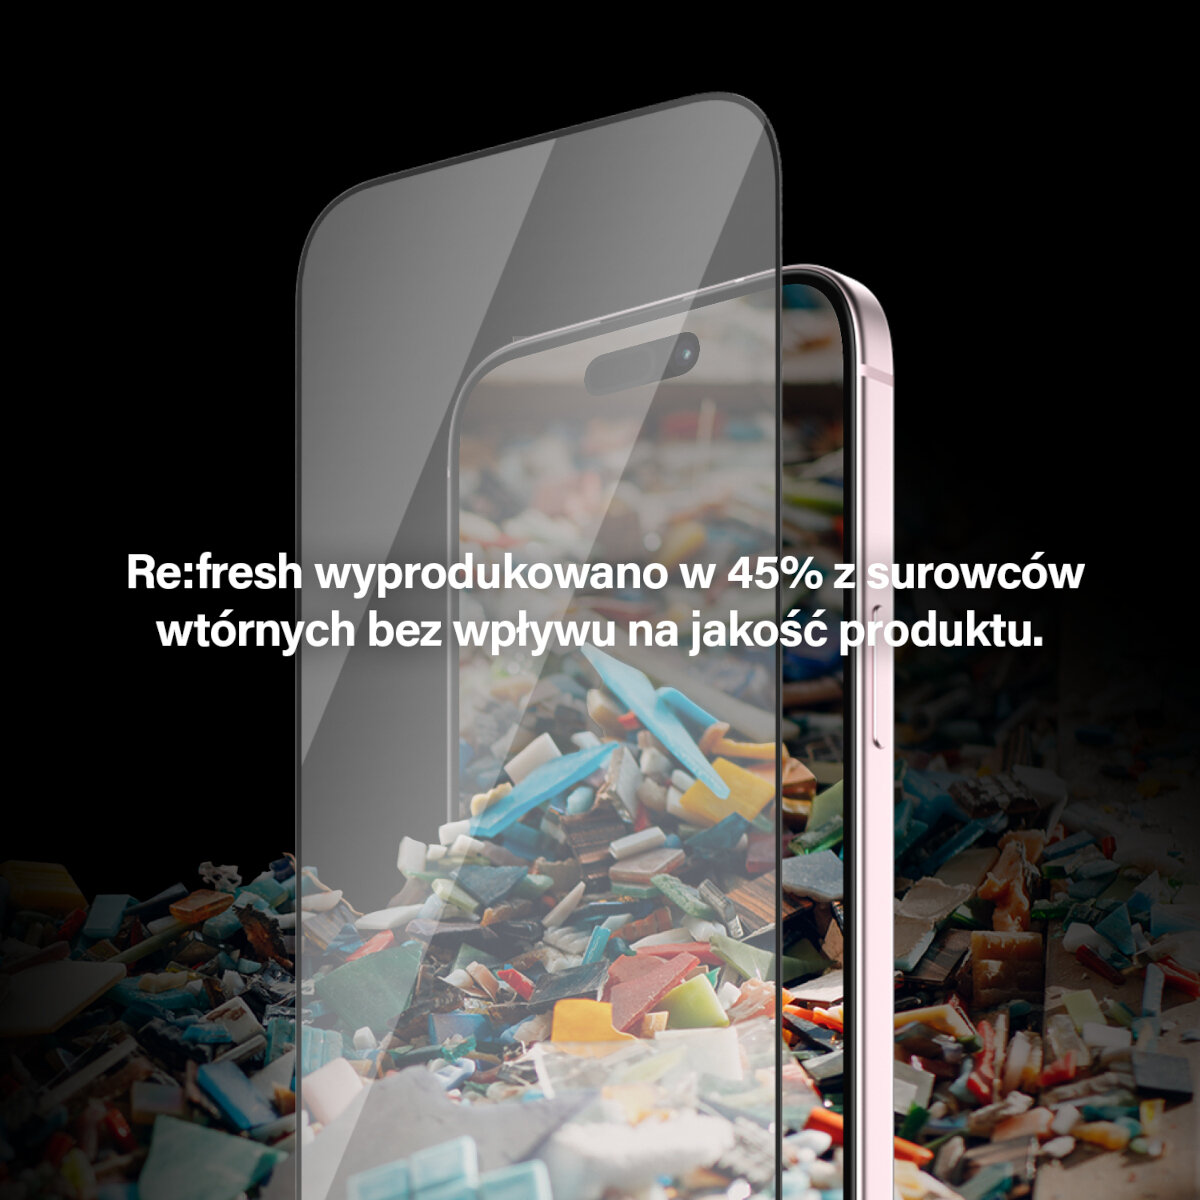 Szkło ochronne PanzerGlass Re:fresh Glass iPhone 15 widoczny telefon z przyłożonym szkłem na tle śmieci